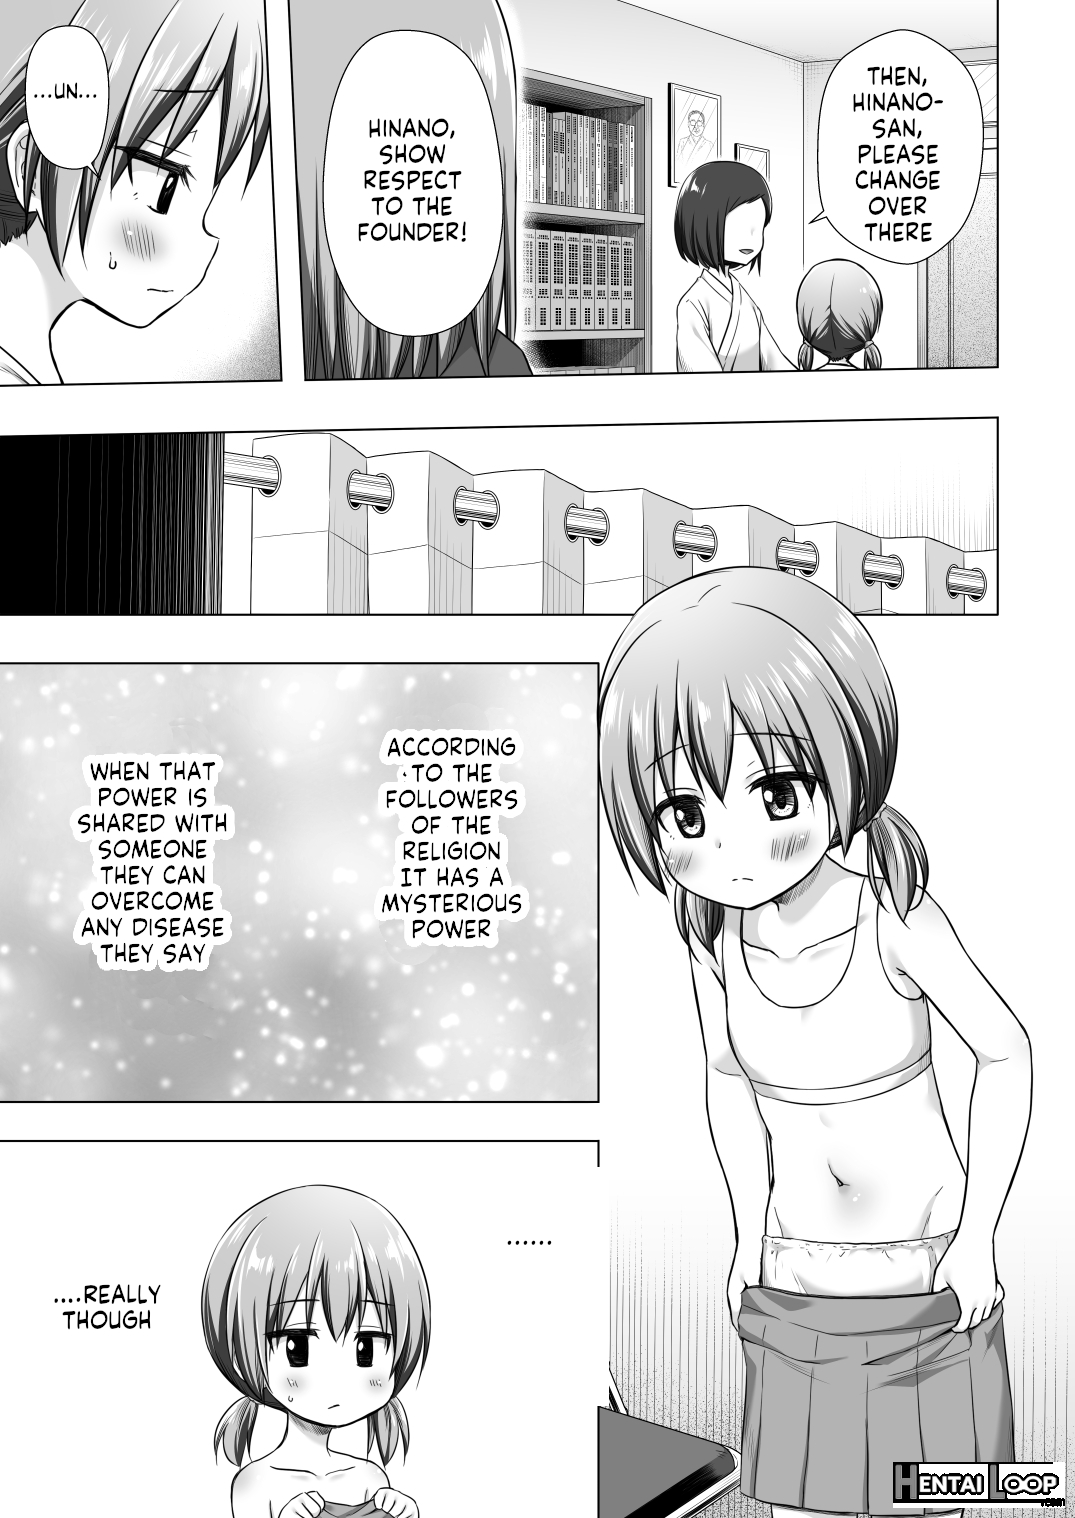 Hinano-chan's Situation page 4